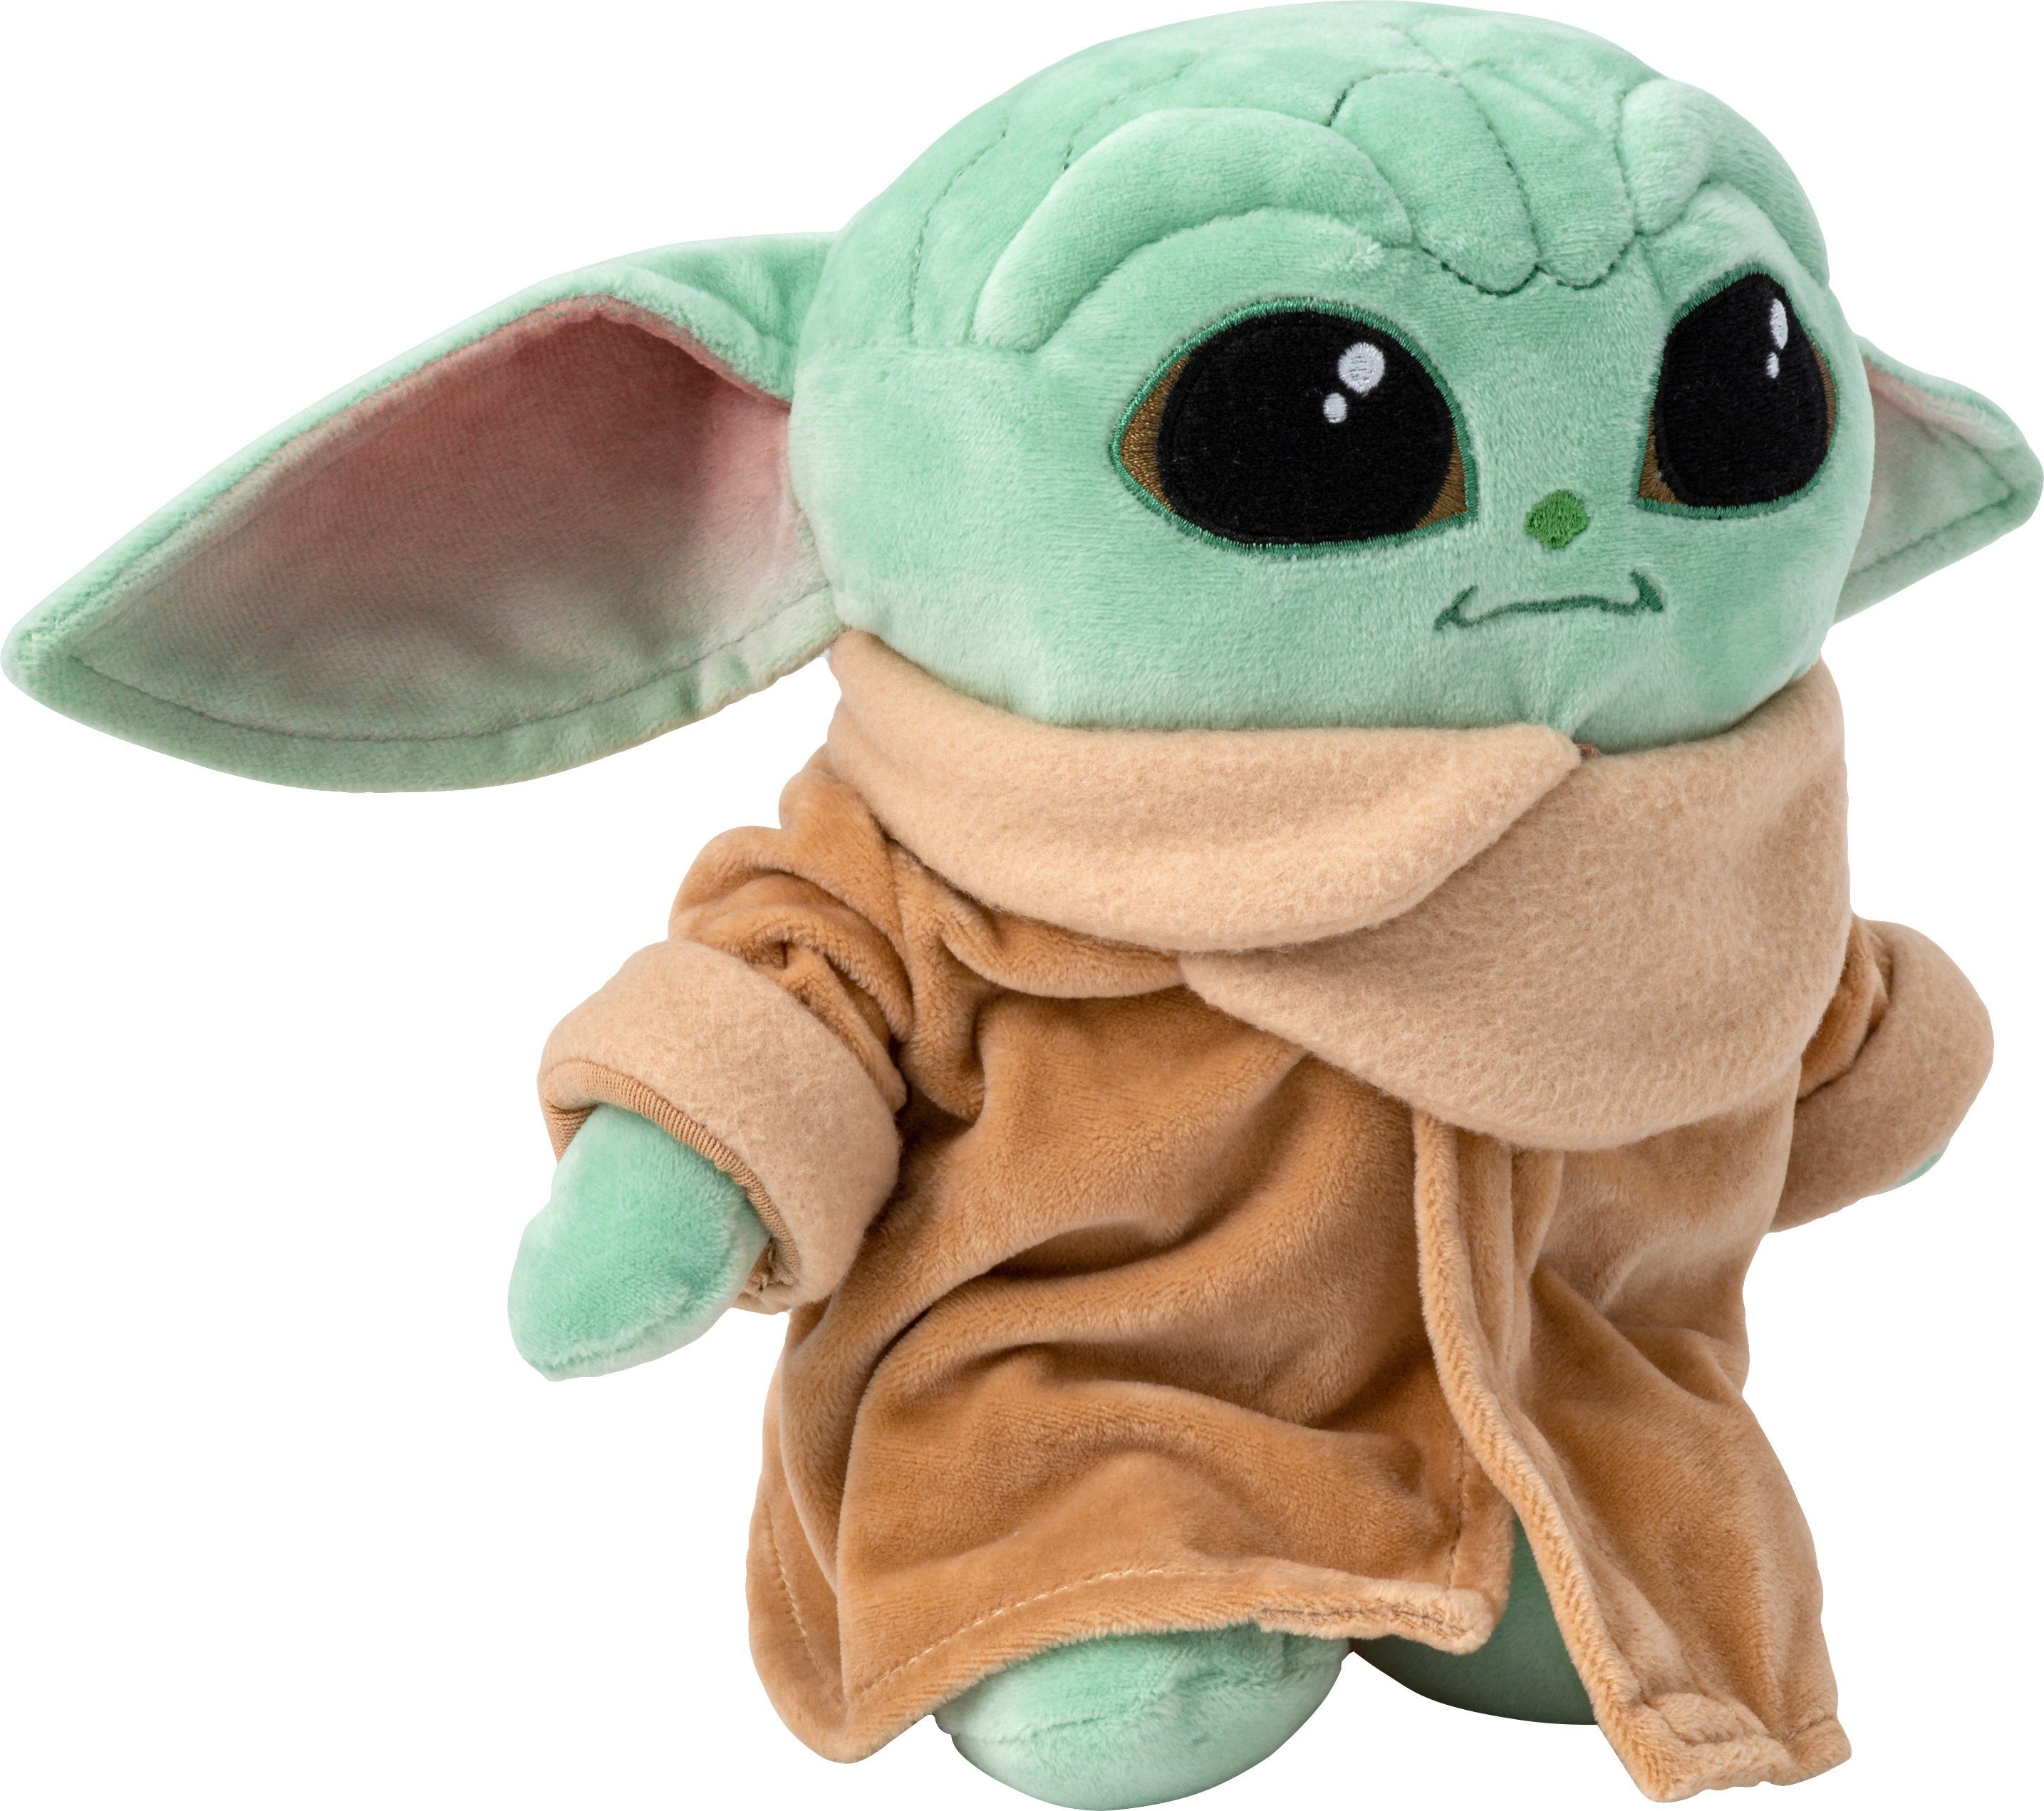 Star Wars Mandalorian Baby Yoda Stofftier Plüschtier Kinder Spielzeug Geschenke 